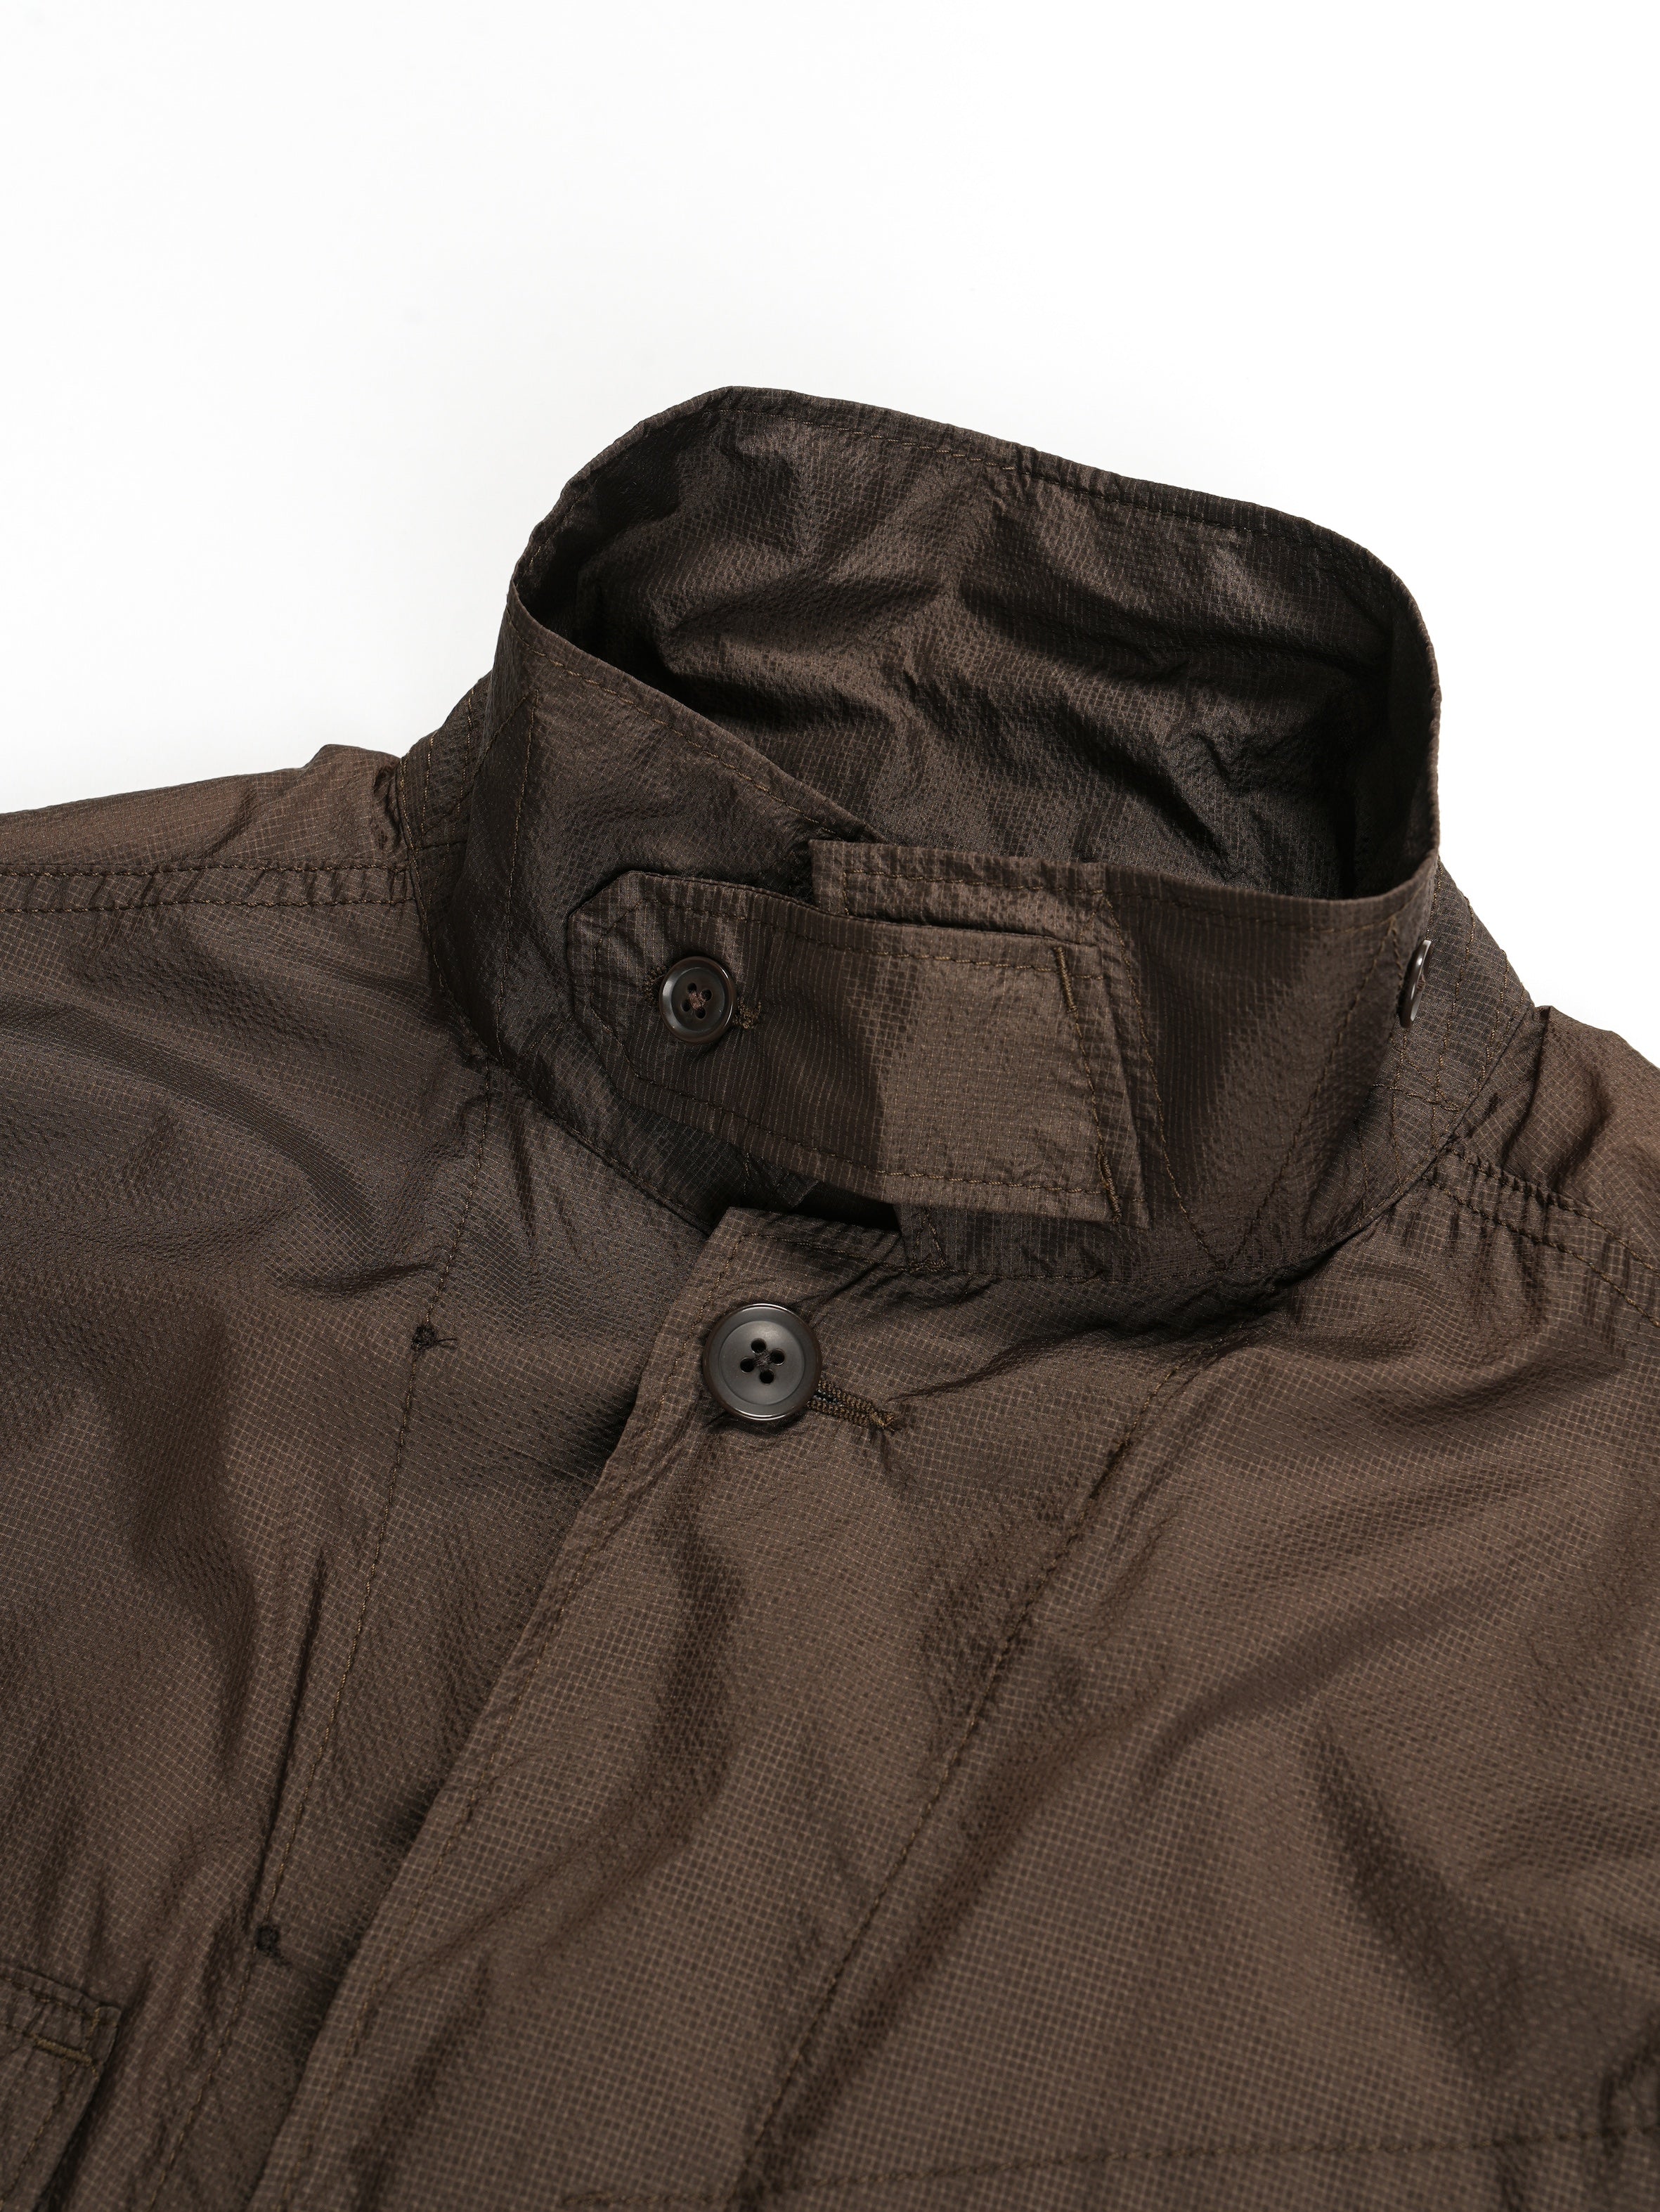 Engineered Garments BDU Jacket - Dk.Brown Nylon Micro Ripstop